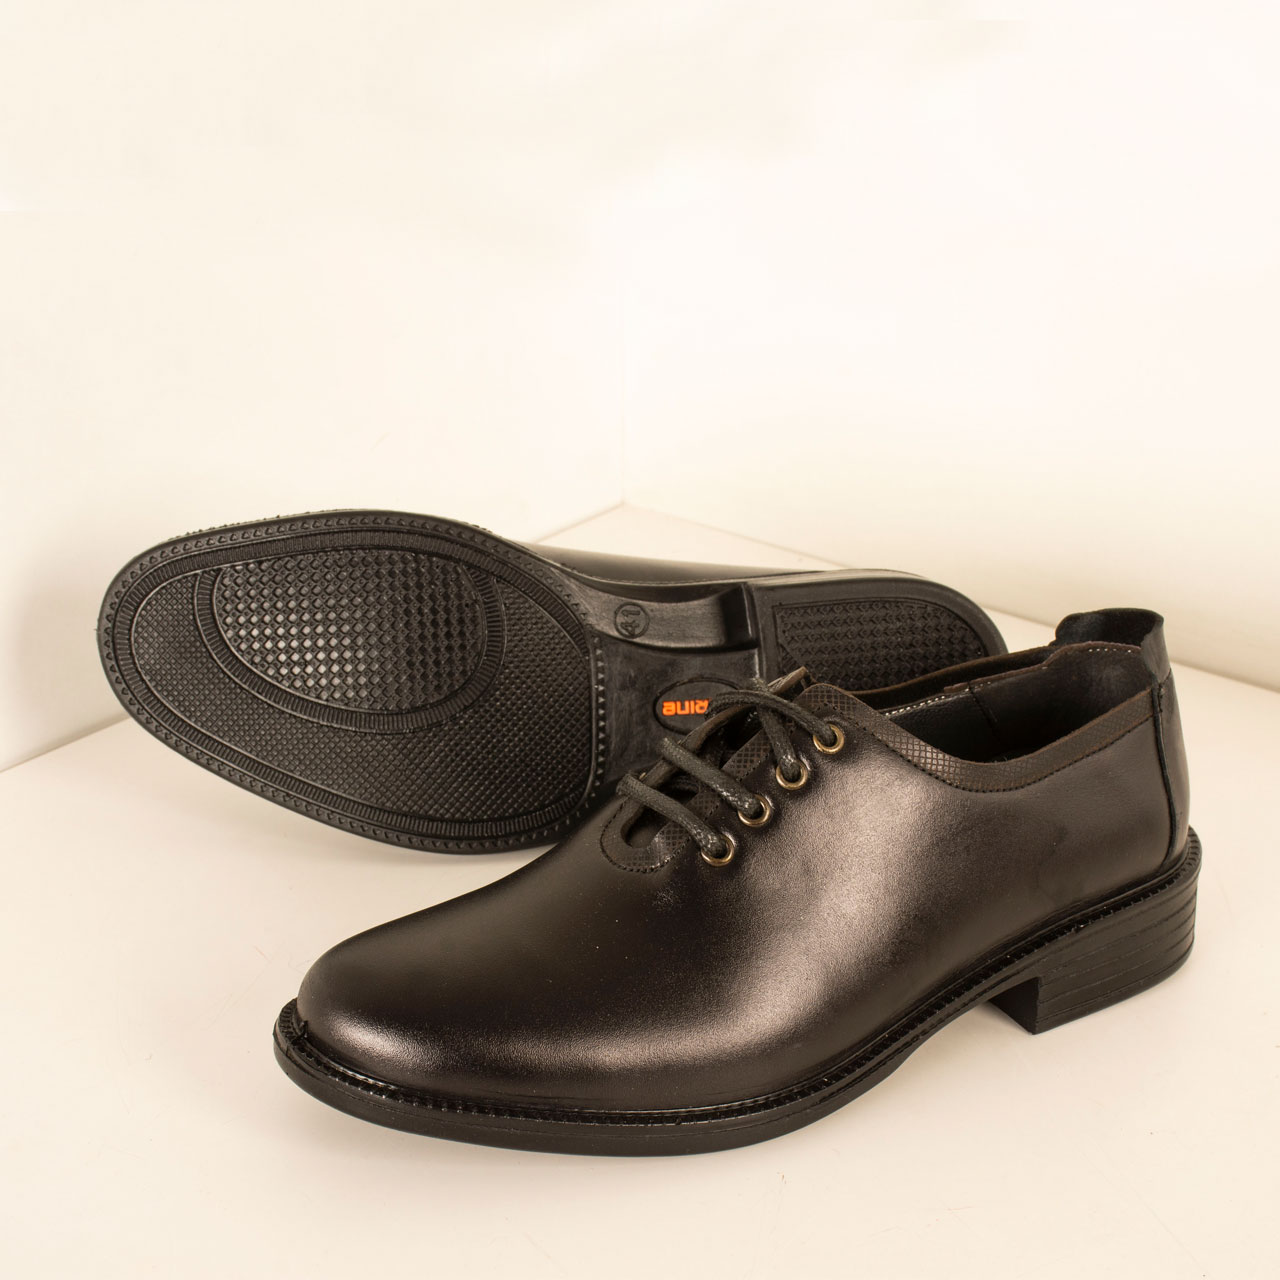 PARINECHARM leather men's shoes , SHO190 Model 